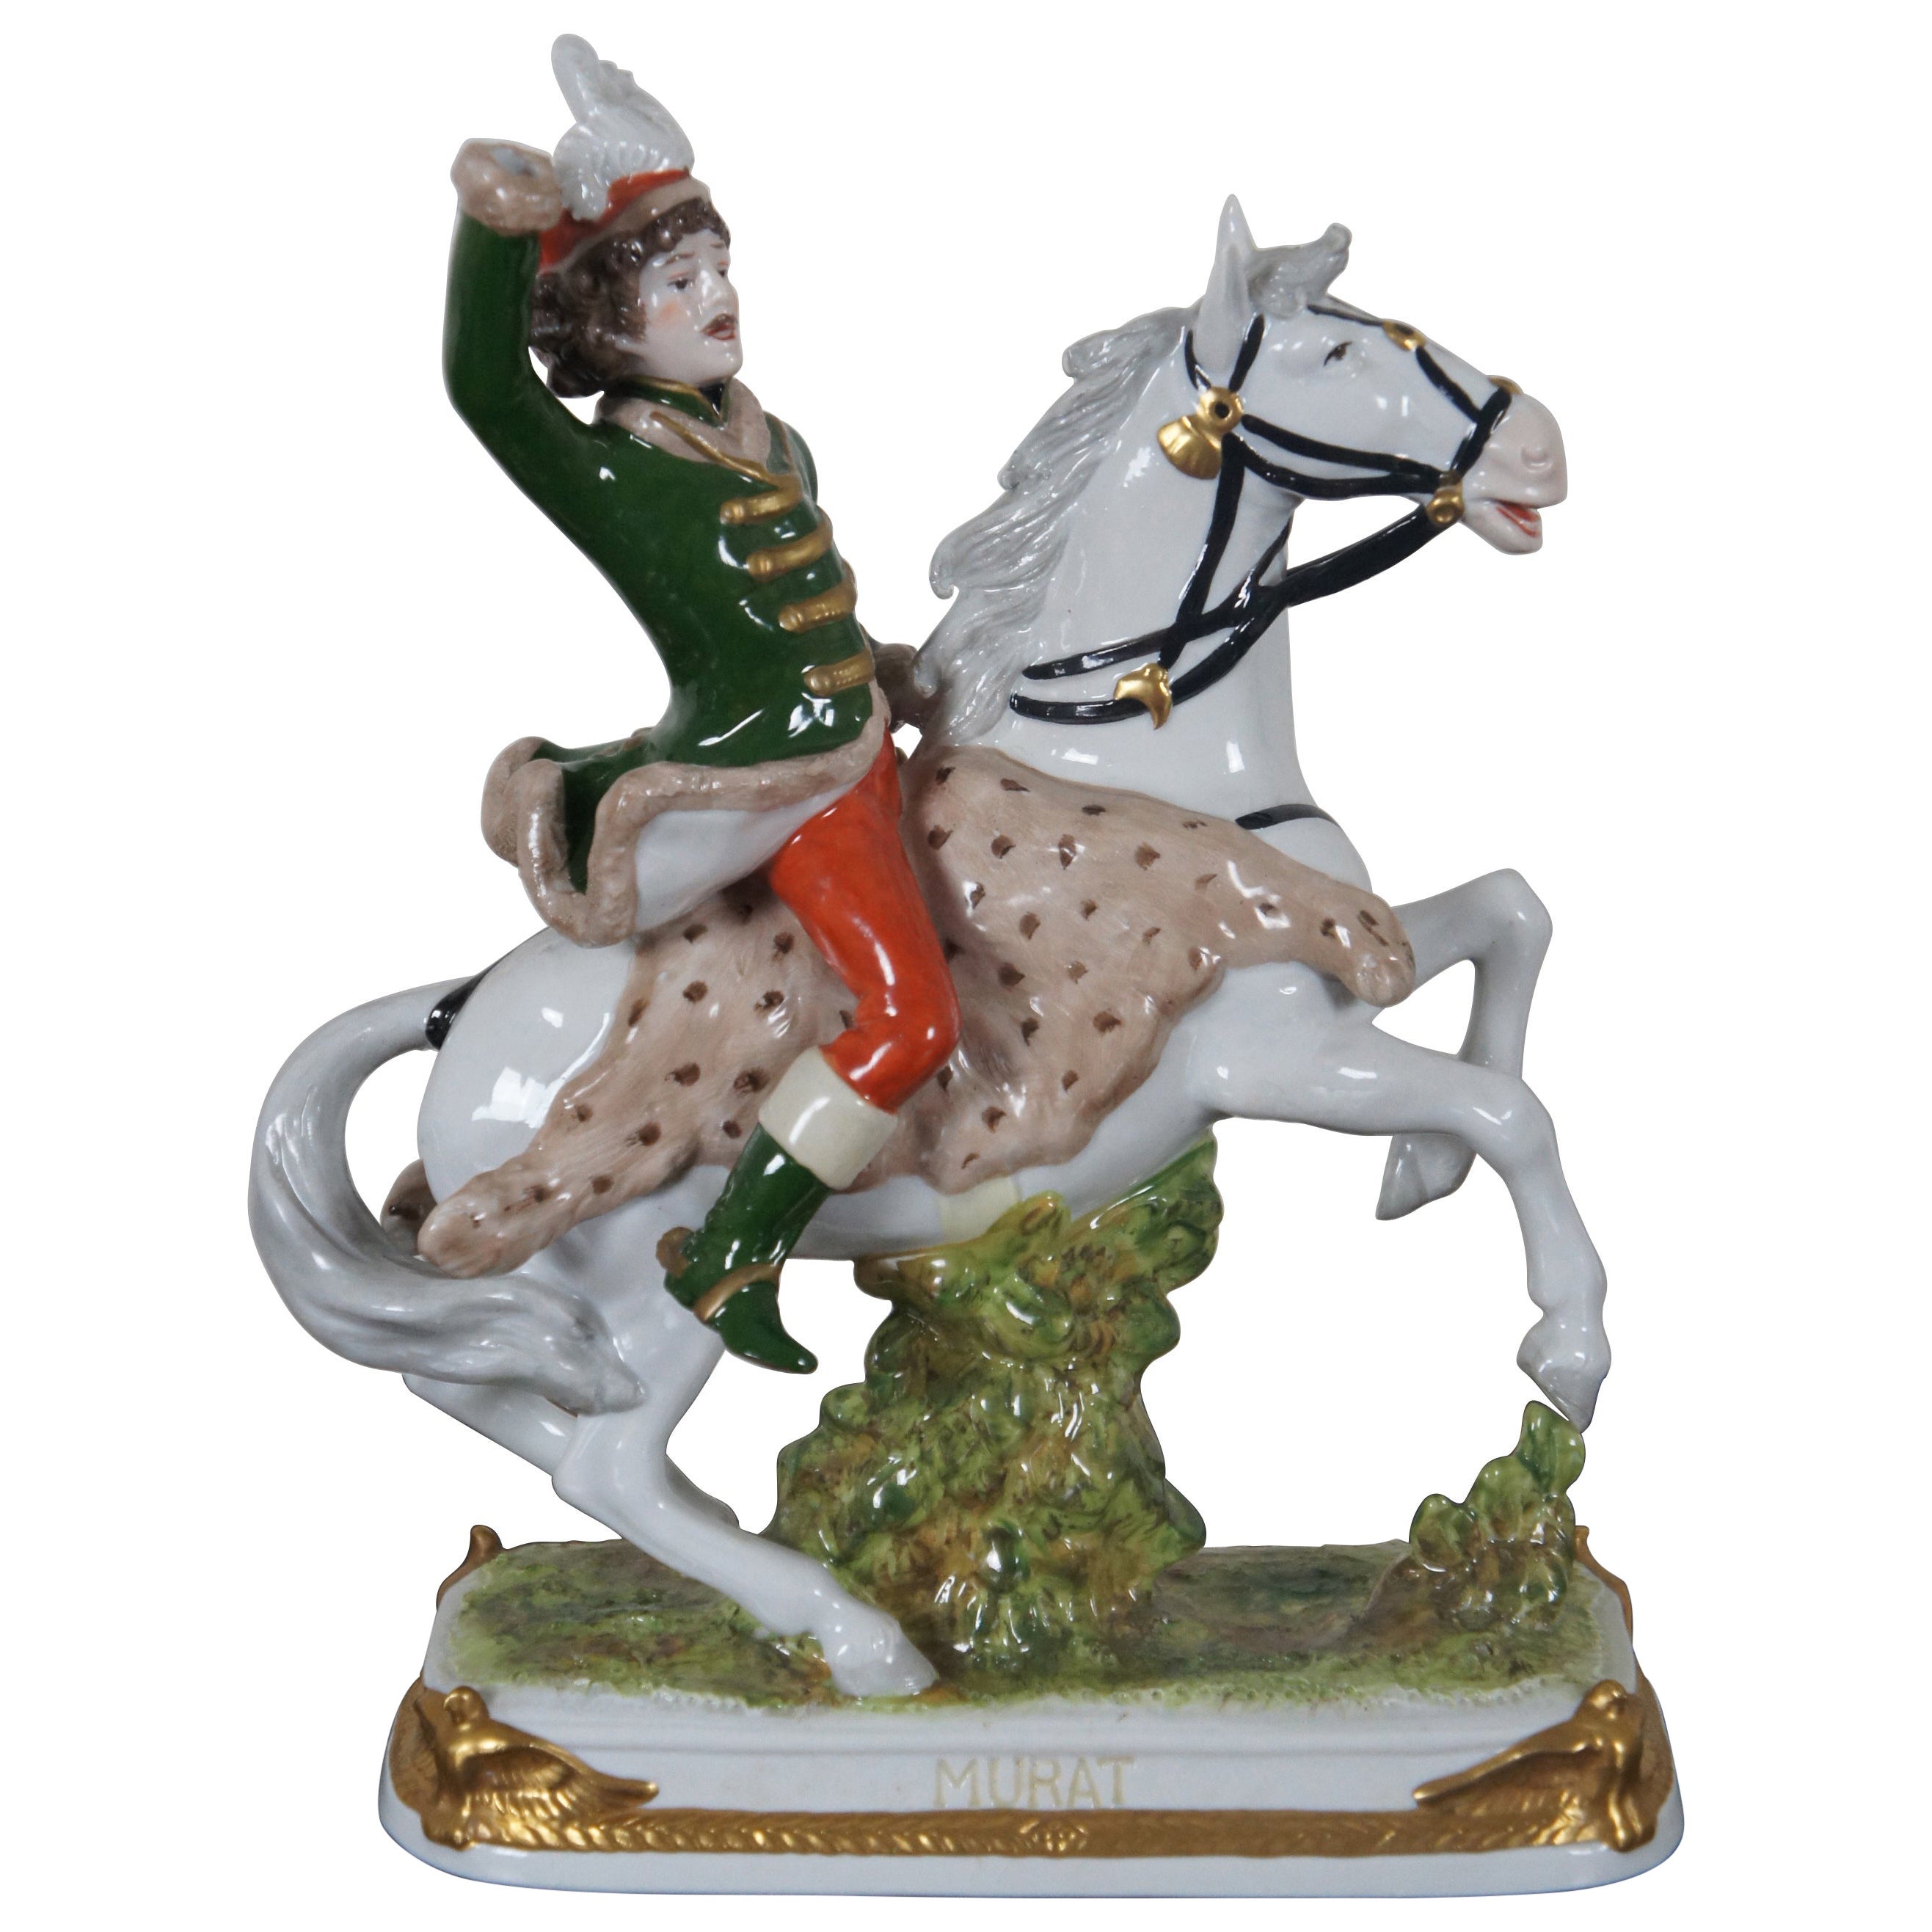 Antique Kister Porcelain Joachim Murat Figurine French Revolution Statue